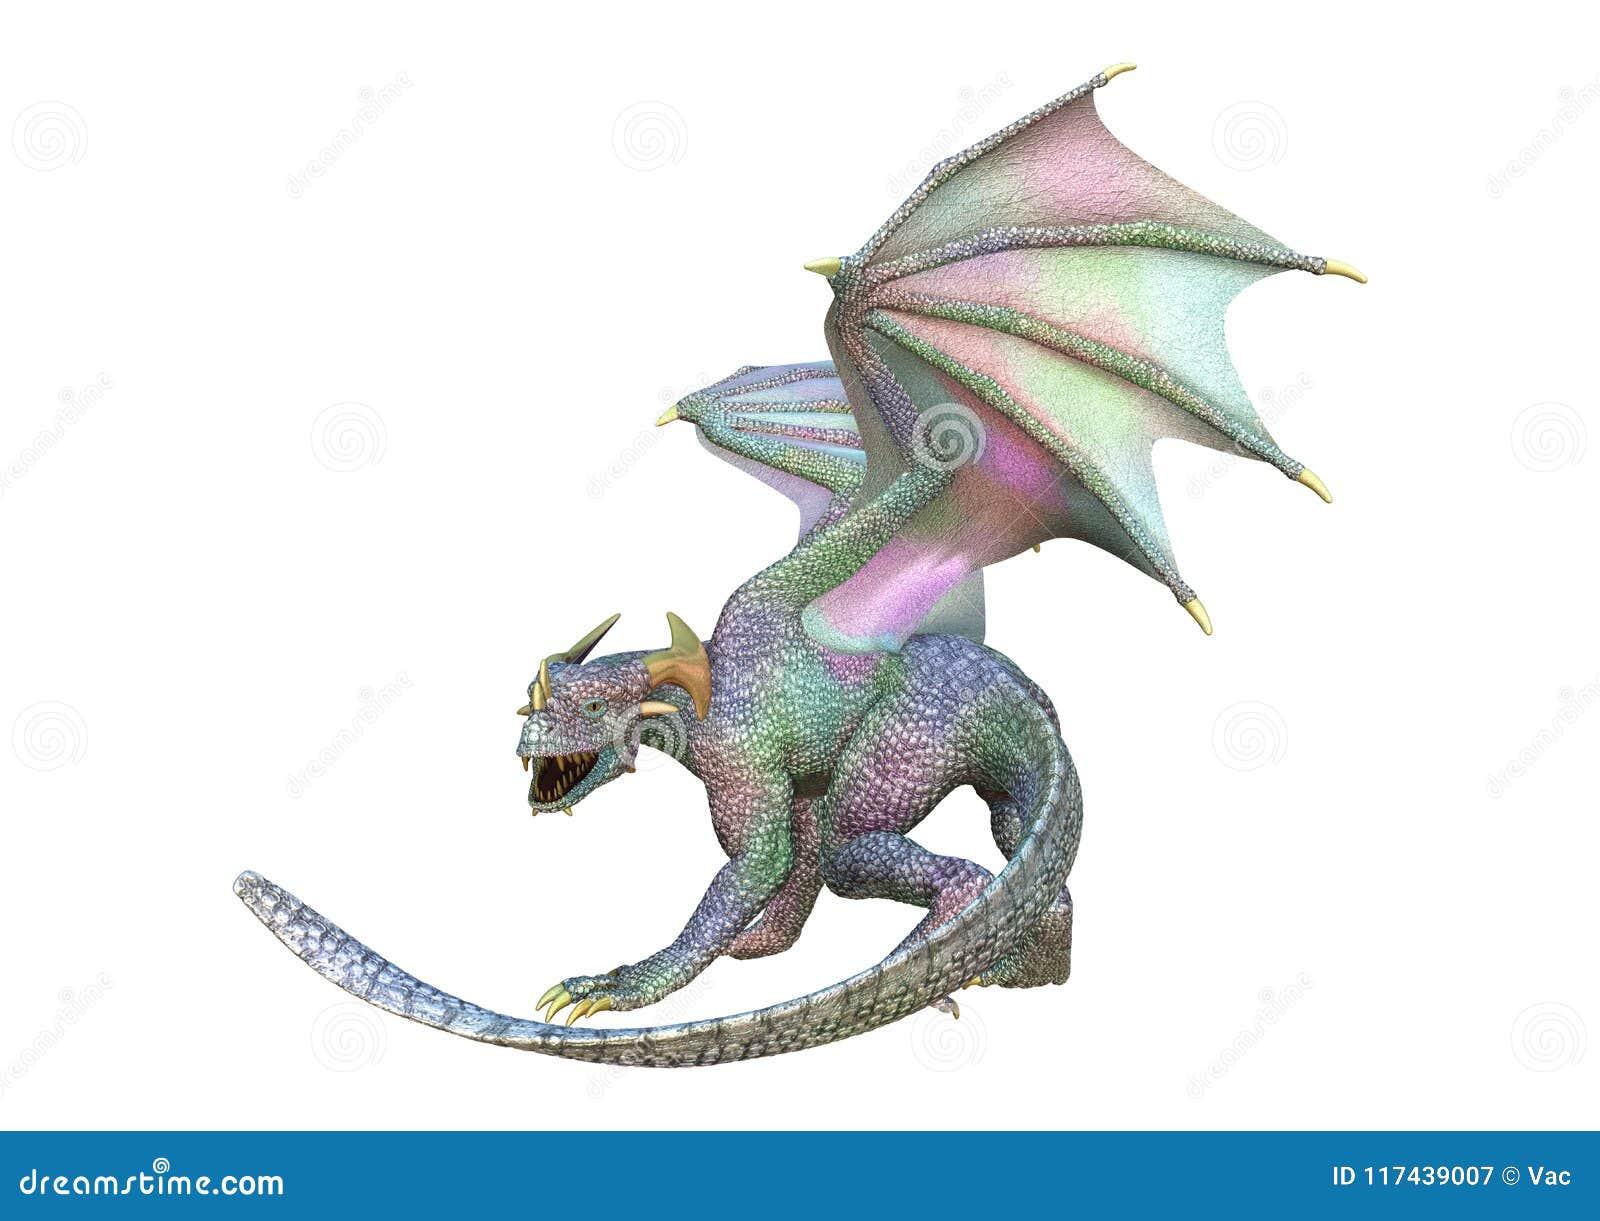 3d rendering fantasy dragon on white